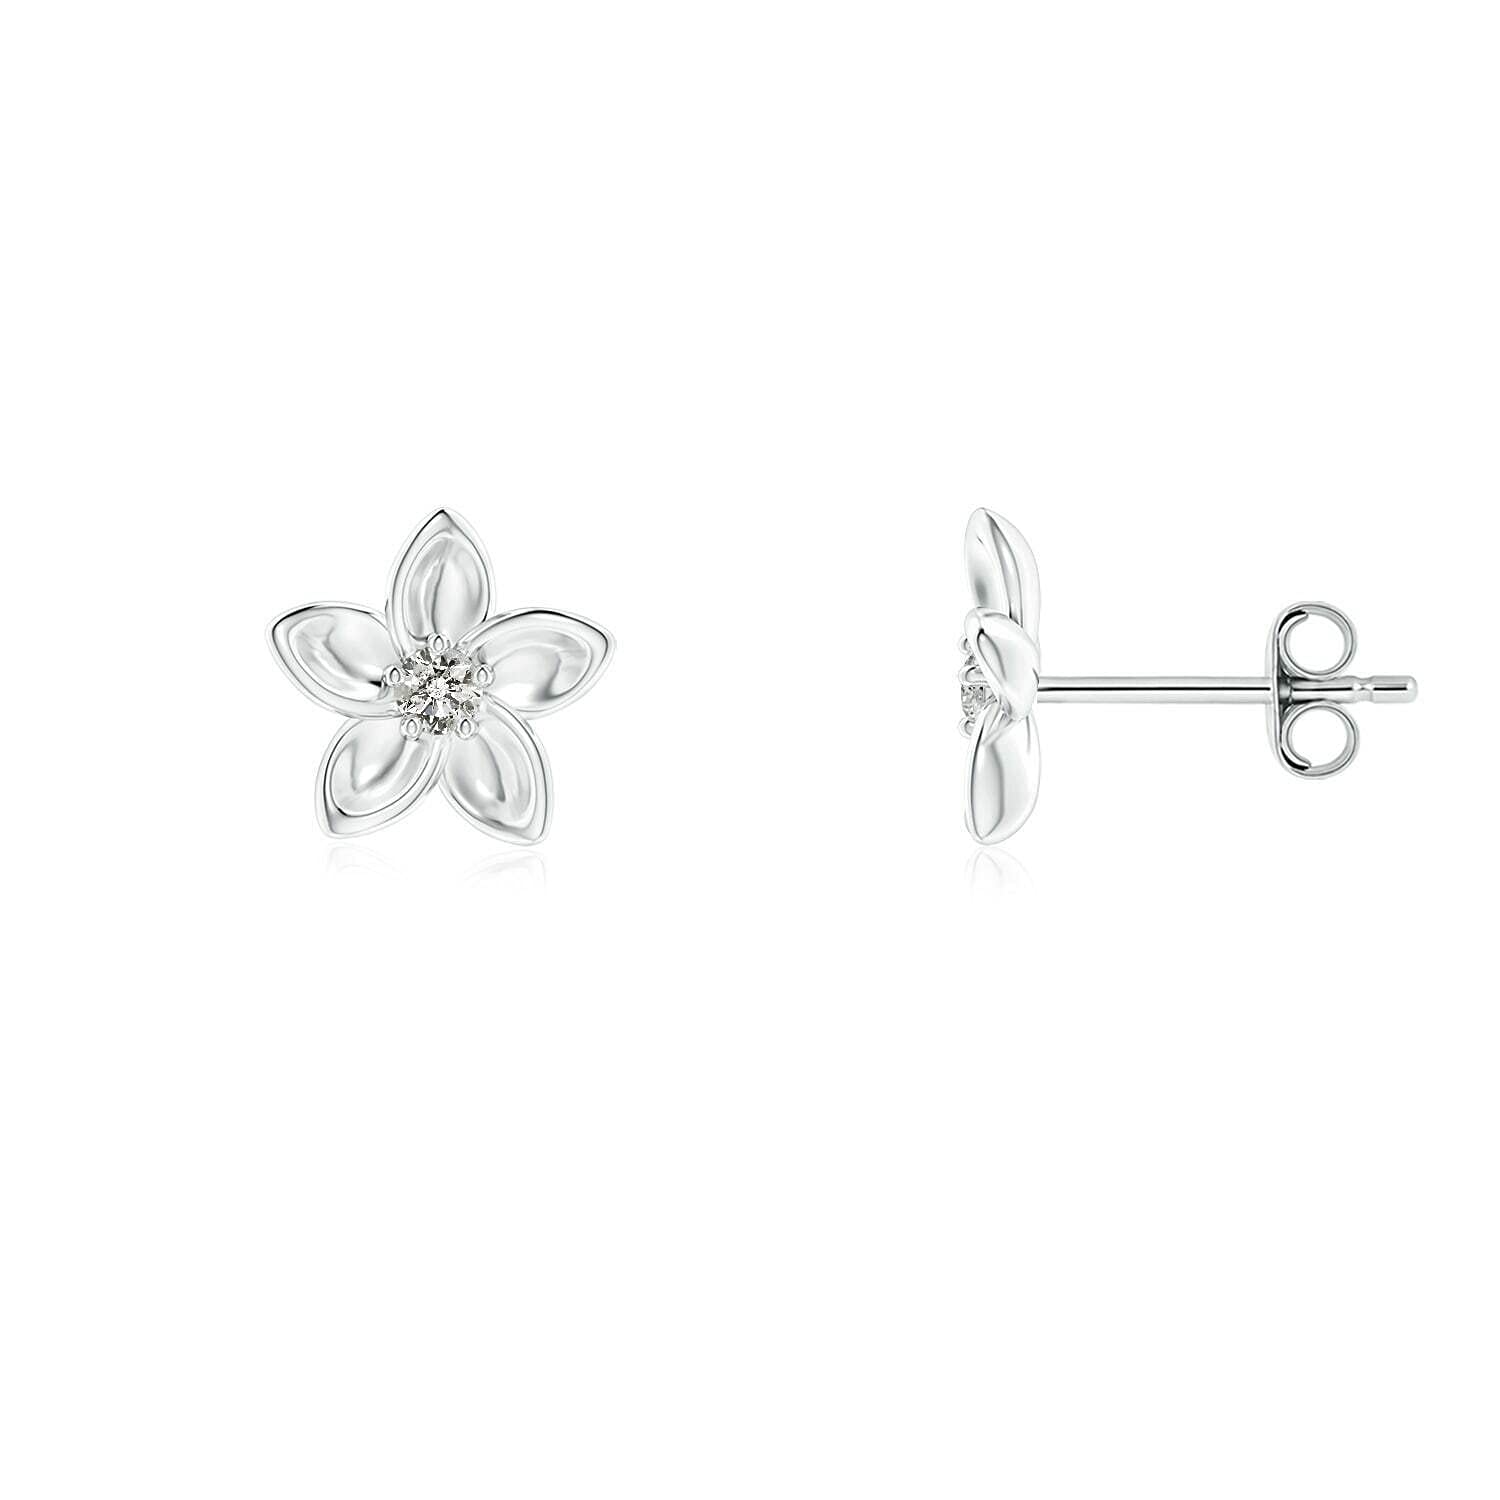 ABHI Created Round Cut White Diamond 925 Sterling Silver 14K White Gold Over Diamond Plumeria Flower Stud Earring for Women's & Girl's